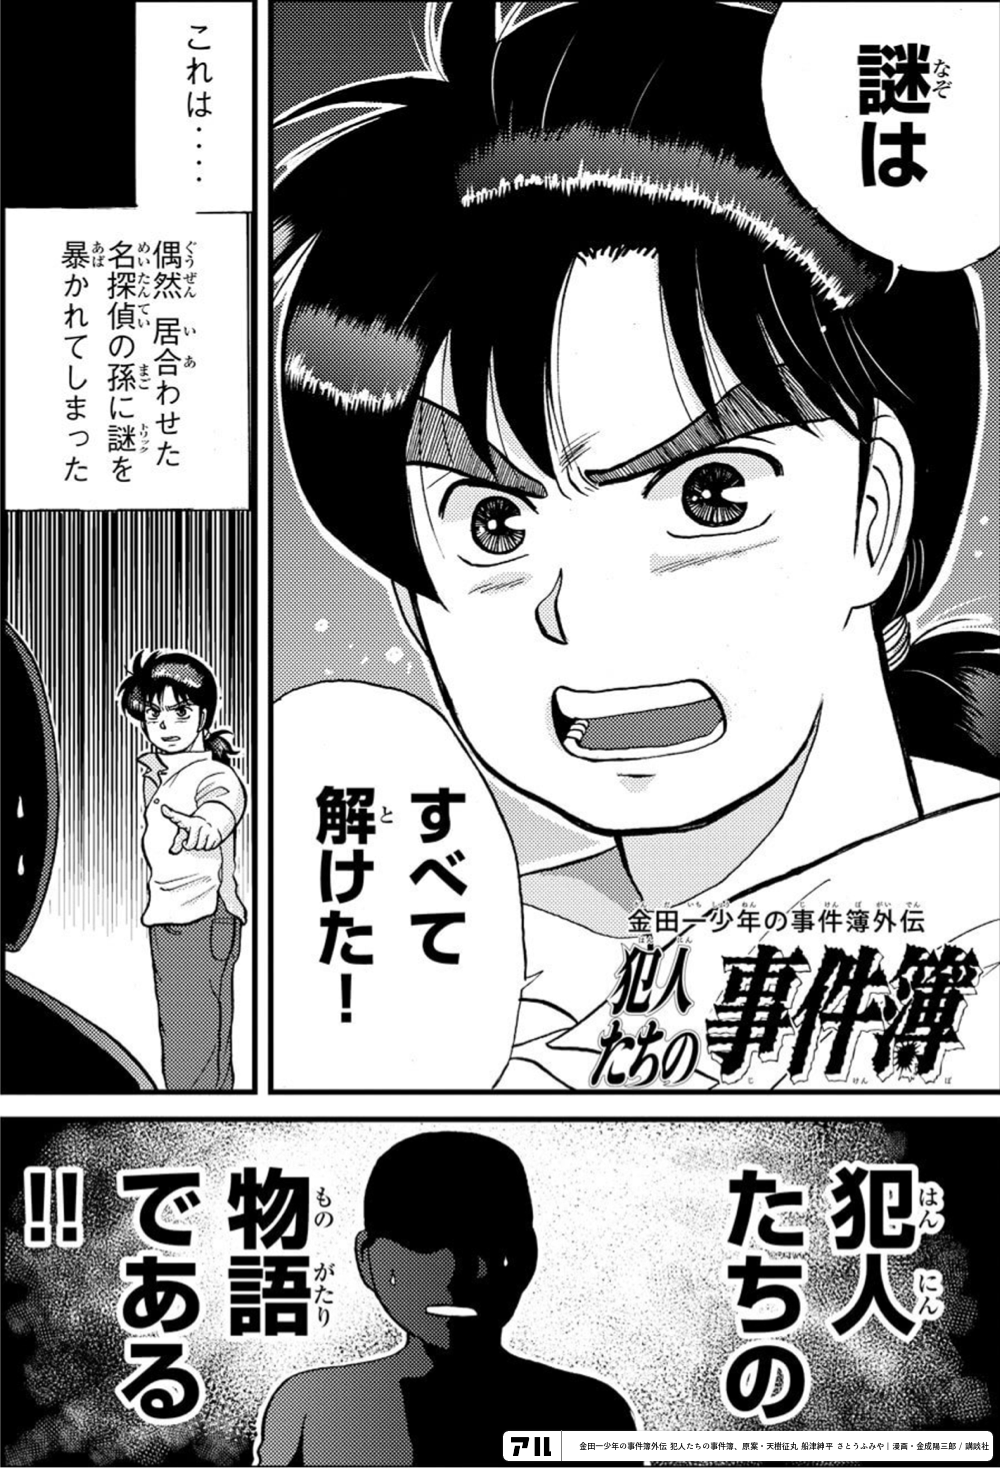 金田一少年の事件簿外伝 犯人たちの事件簿 1 - 少年漫画